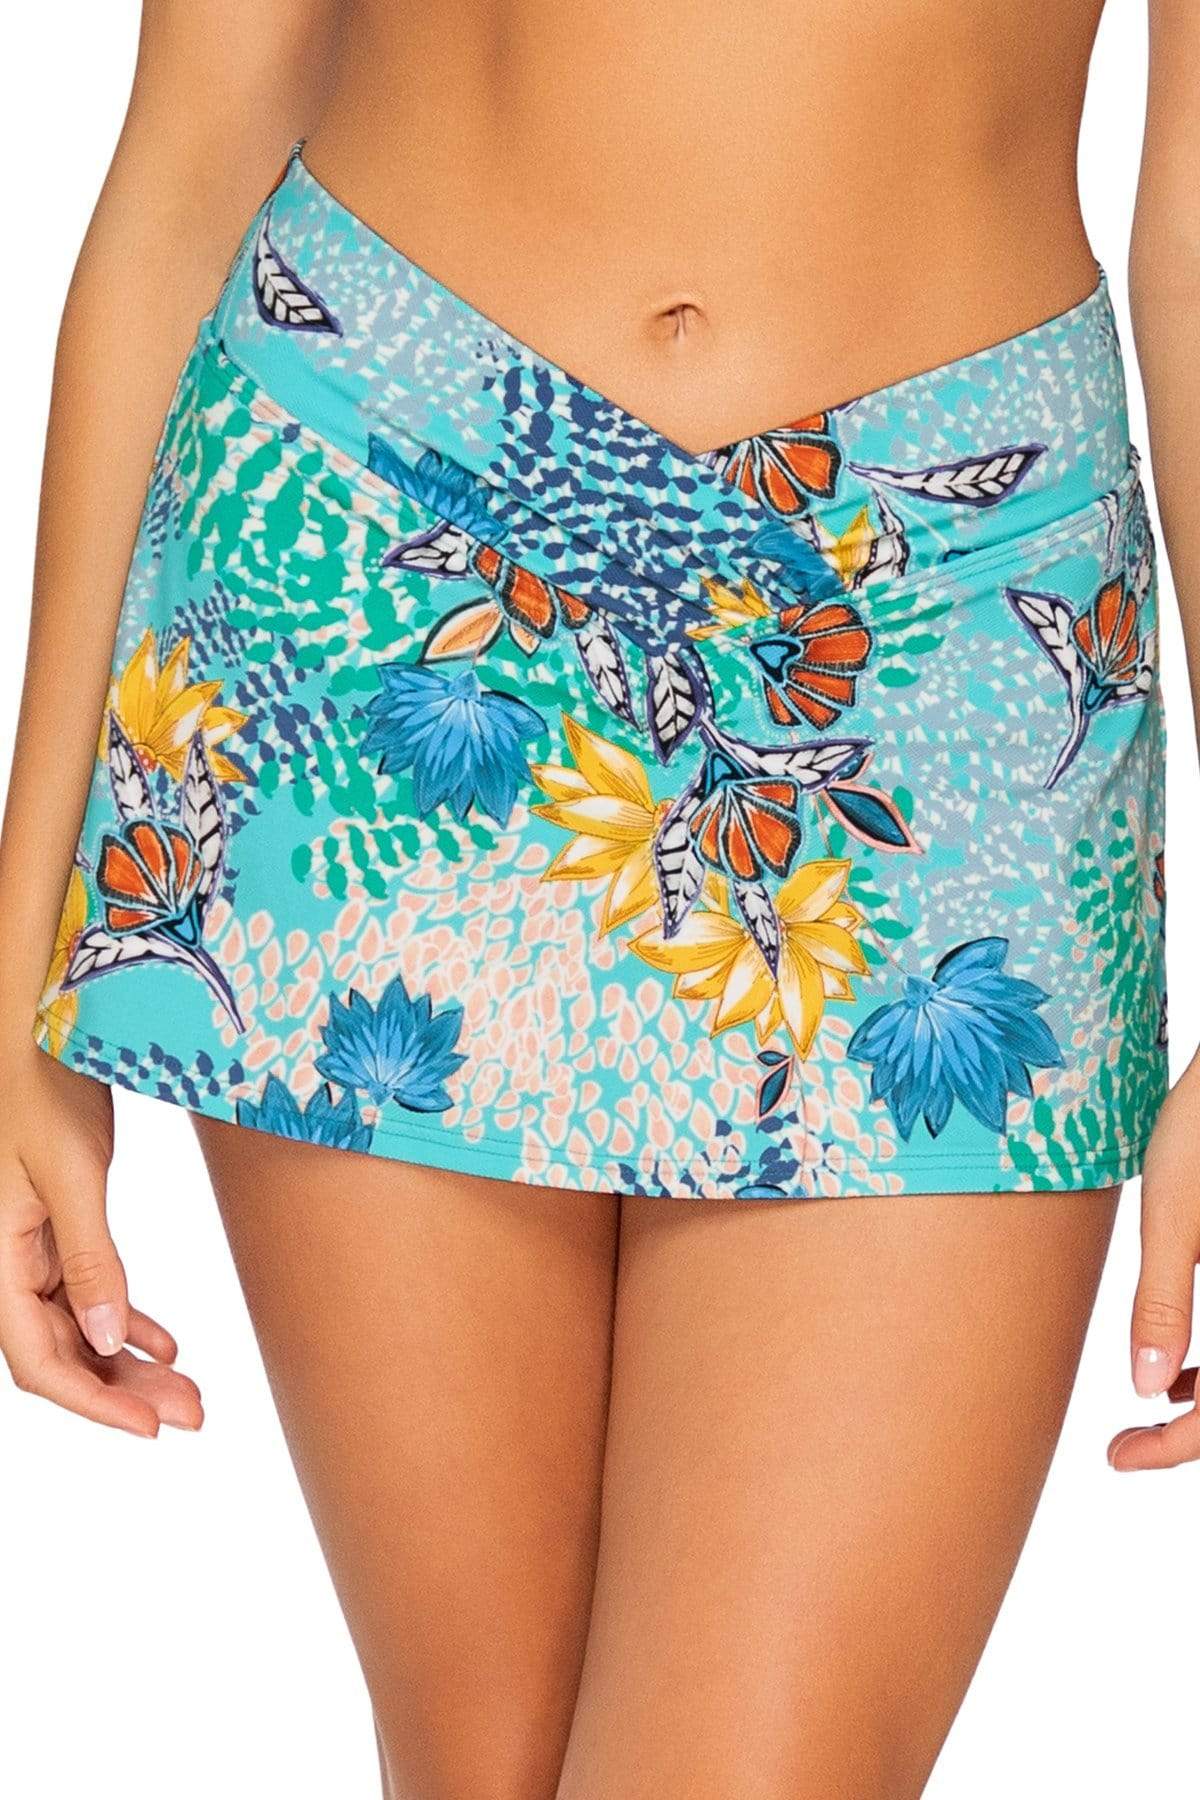 Bestswimwear -  Sunsets Aqua Reef Summer Lovin Swim Skirt